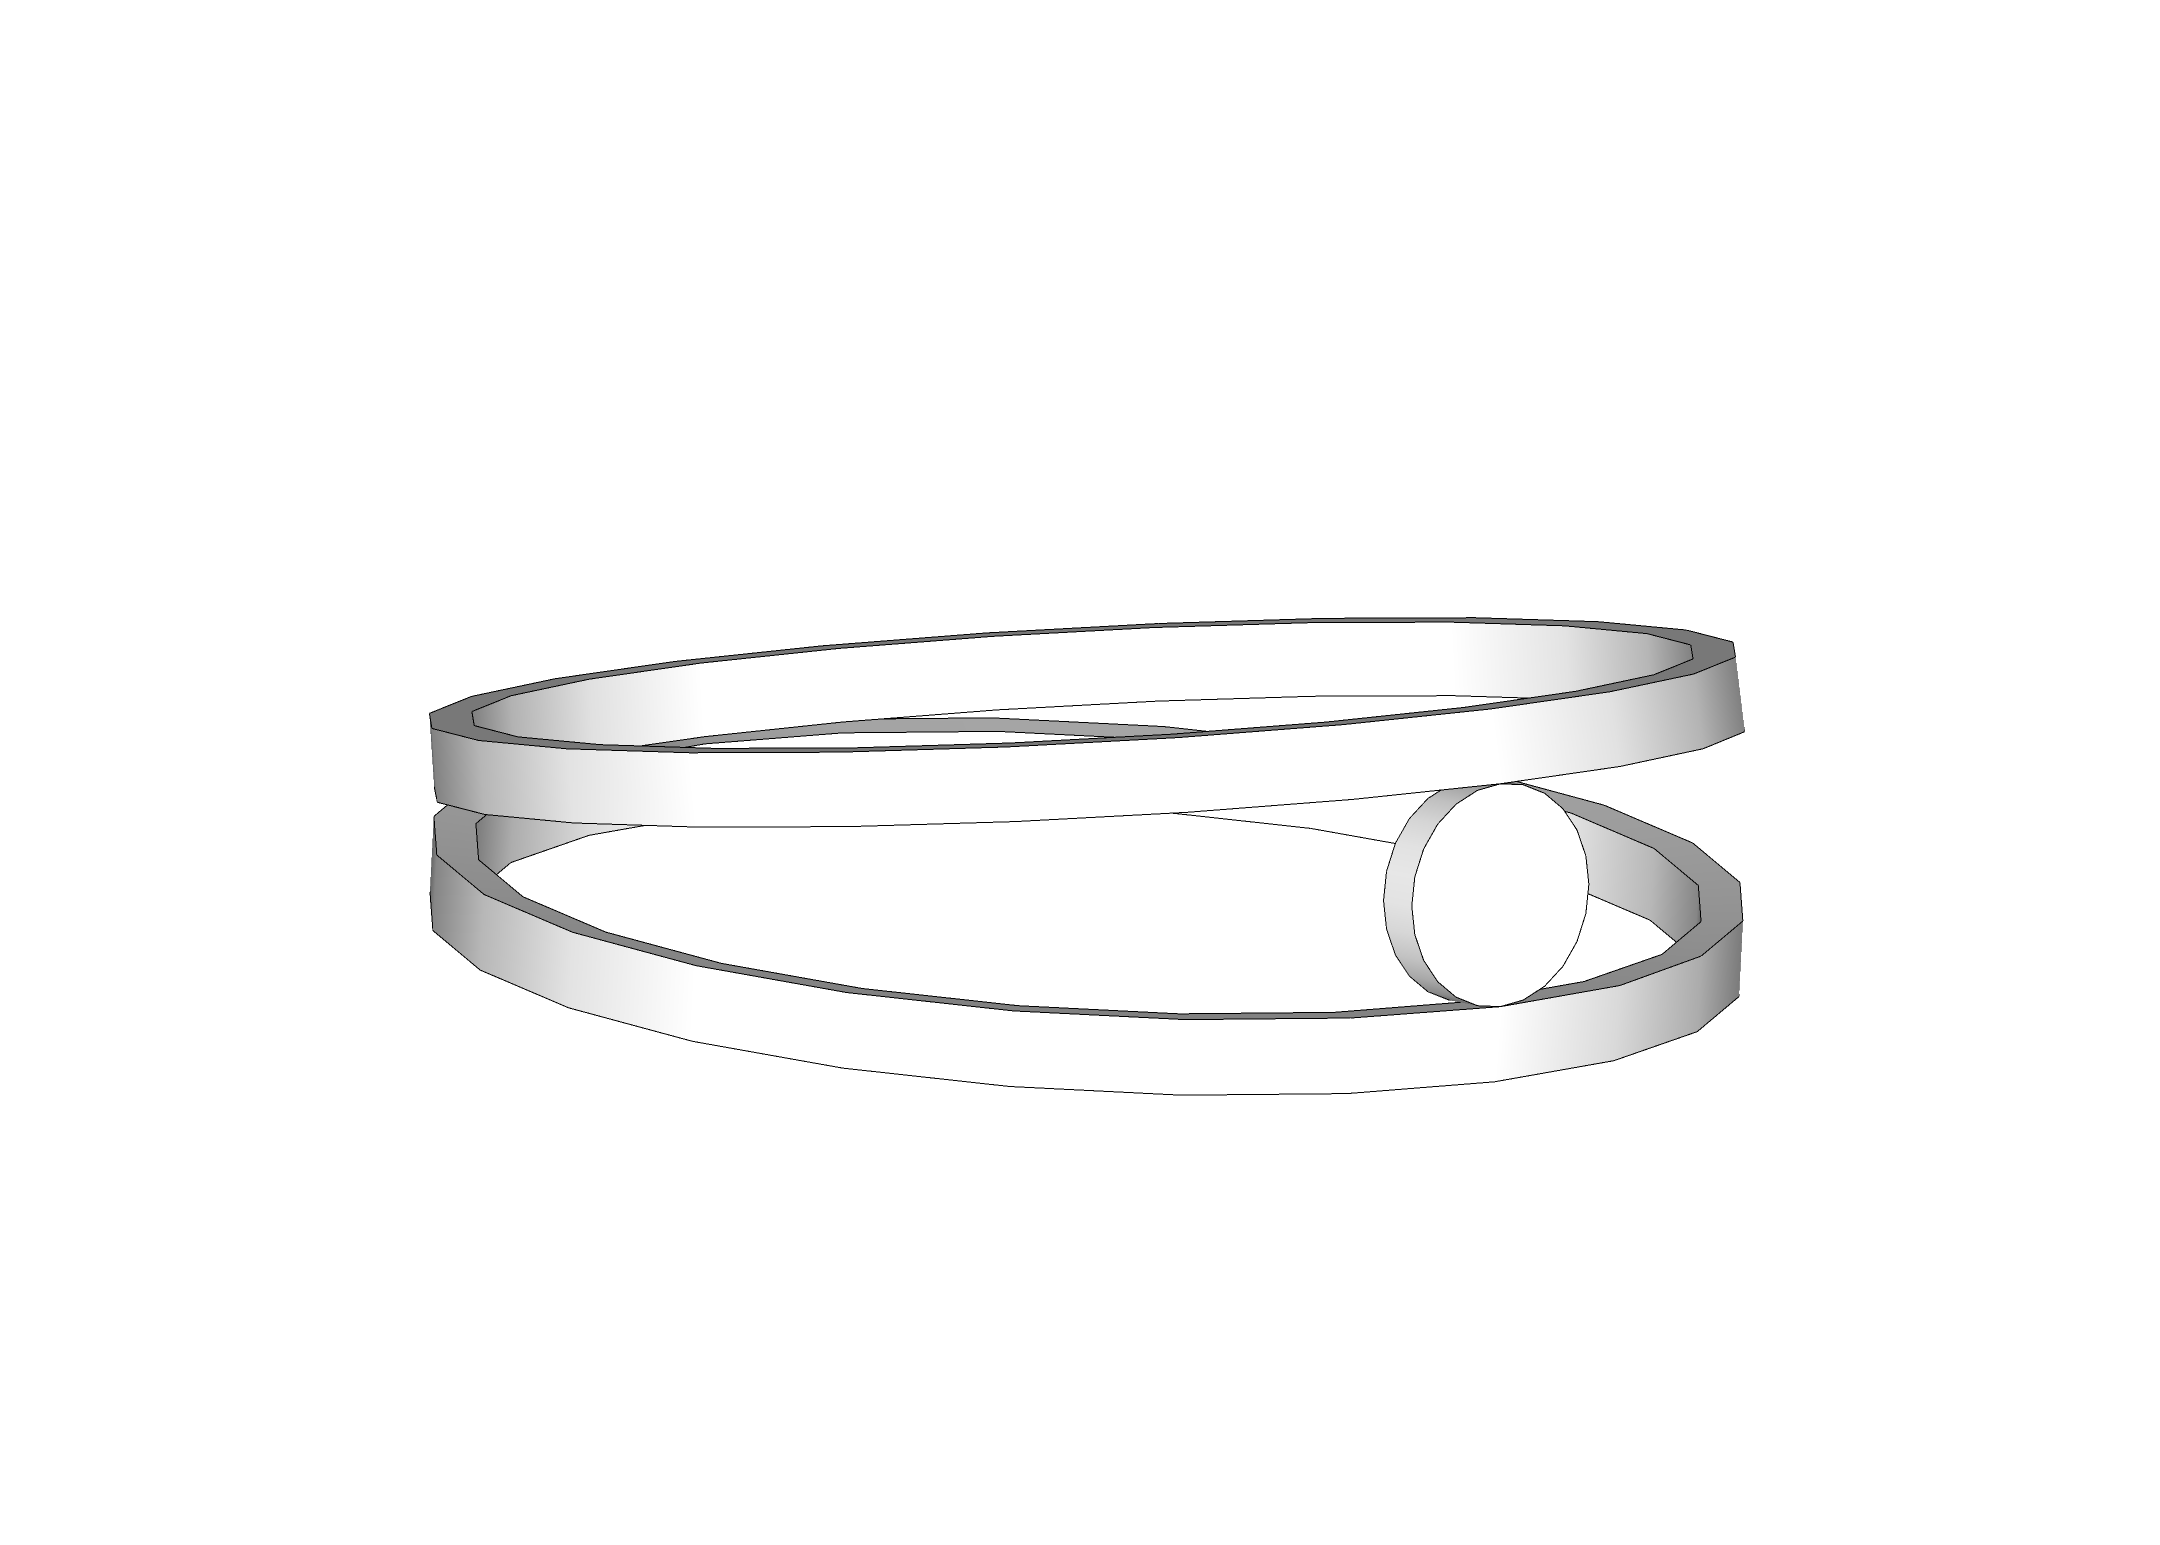 Imagen 3D del anillo final con el uso del logicial Sketchup